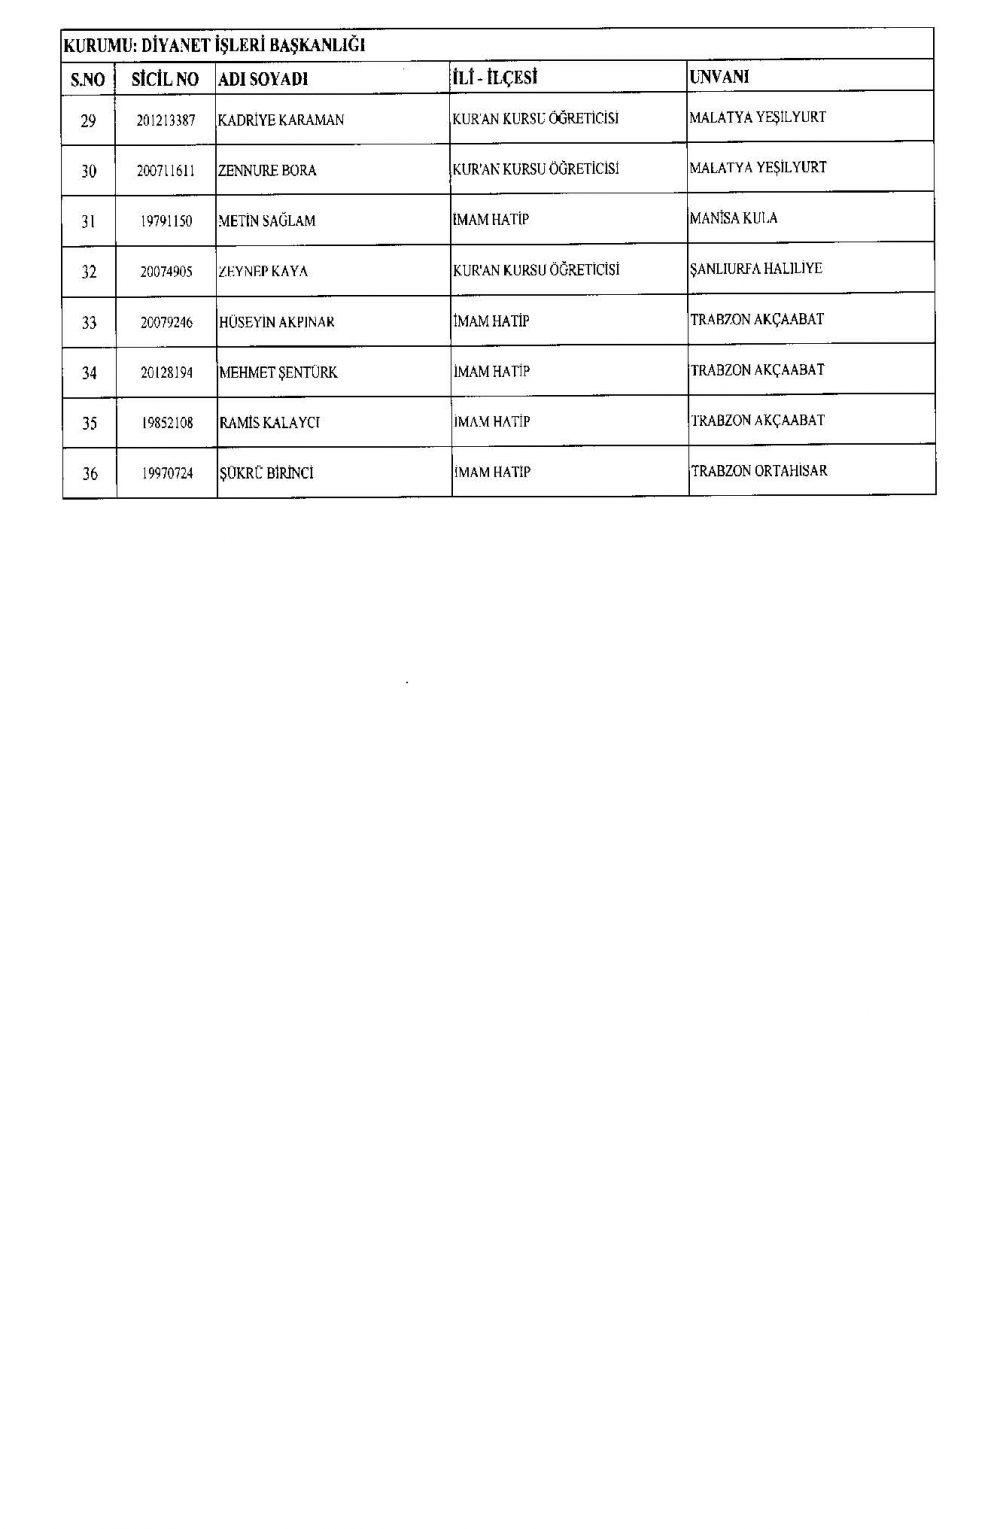 KHK ile görevine iade edilen personelin tam listesi 15 Temmuz 2